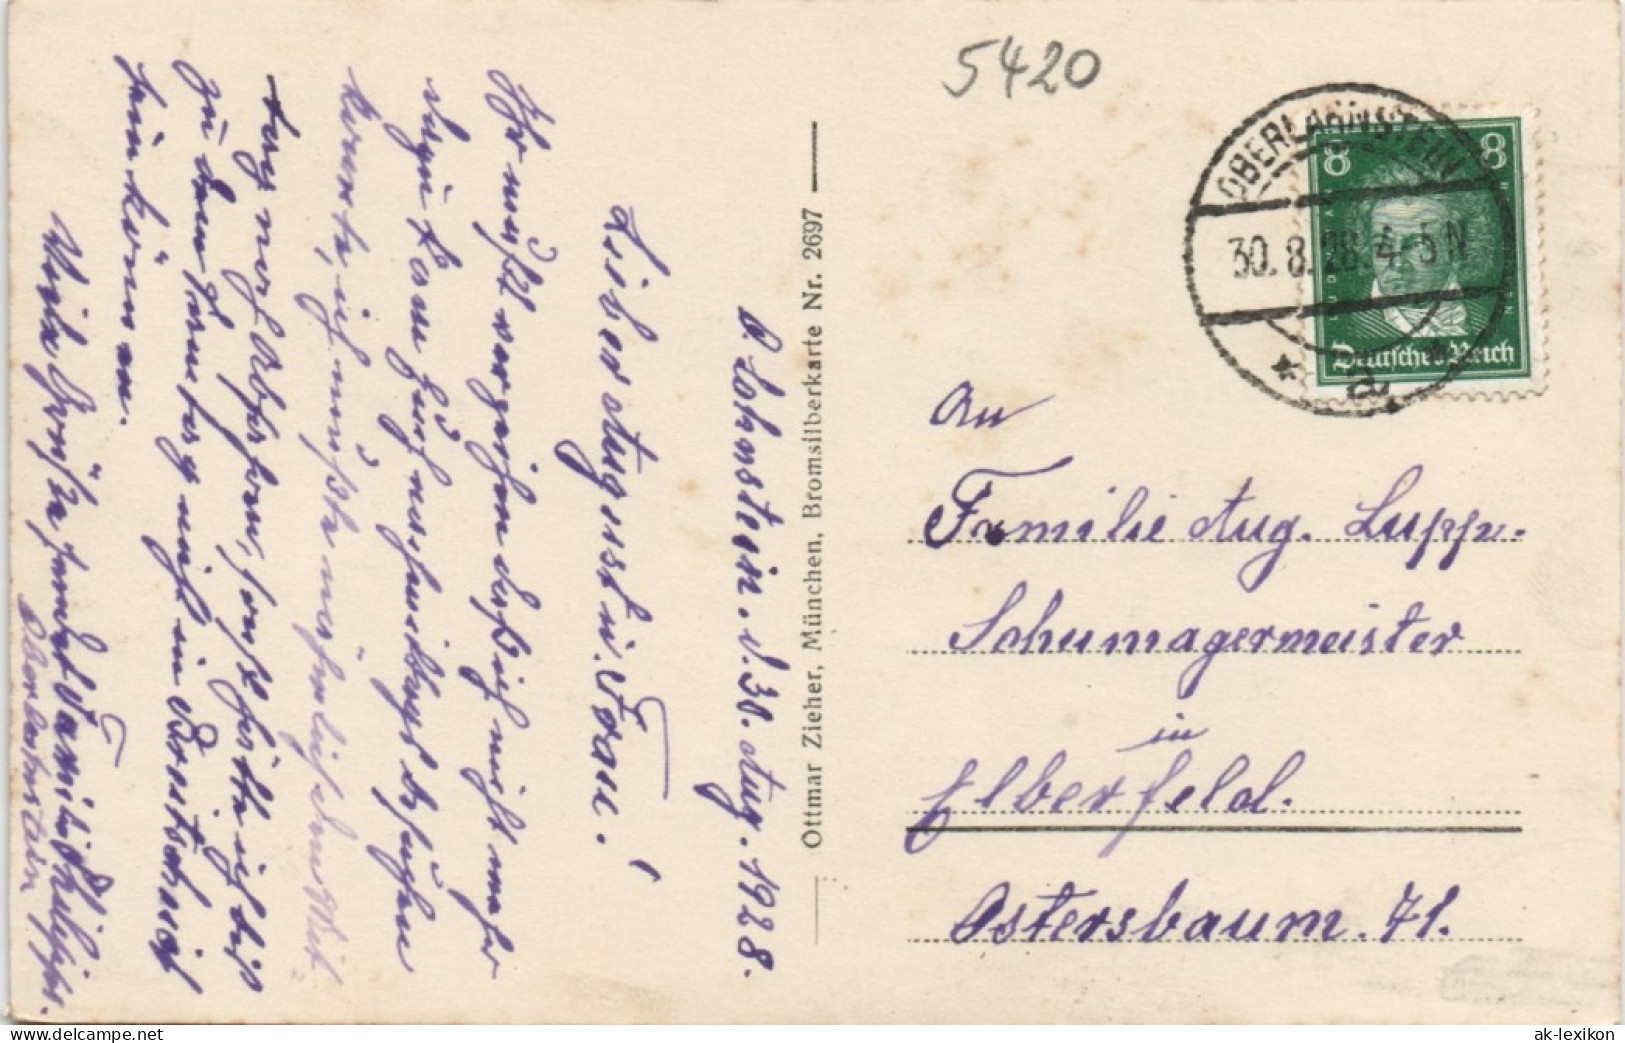 Ansichtskarte Oberlahnstein-Lahnstein Blick Auf Die Stadt - Fabrik 1928 - Lahnstein